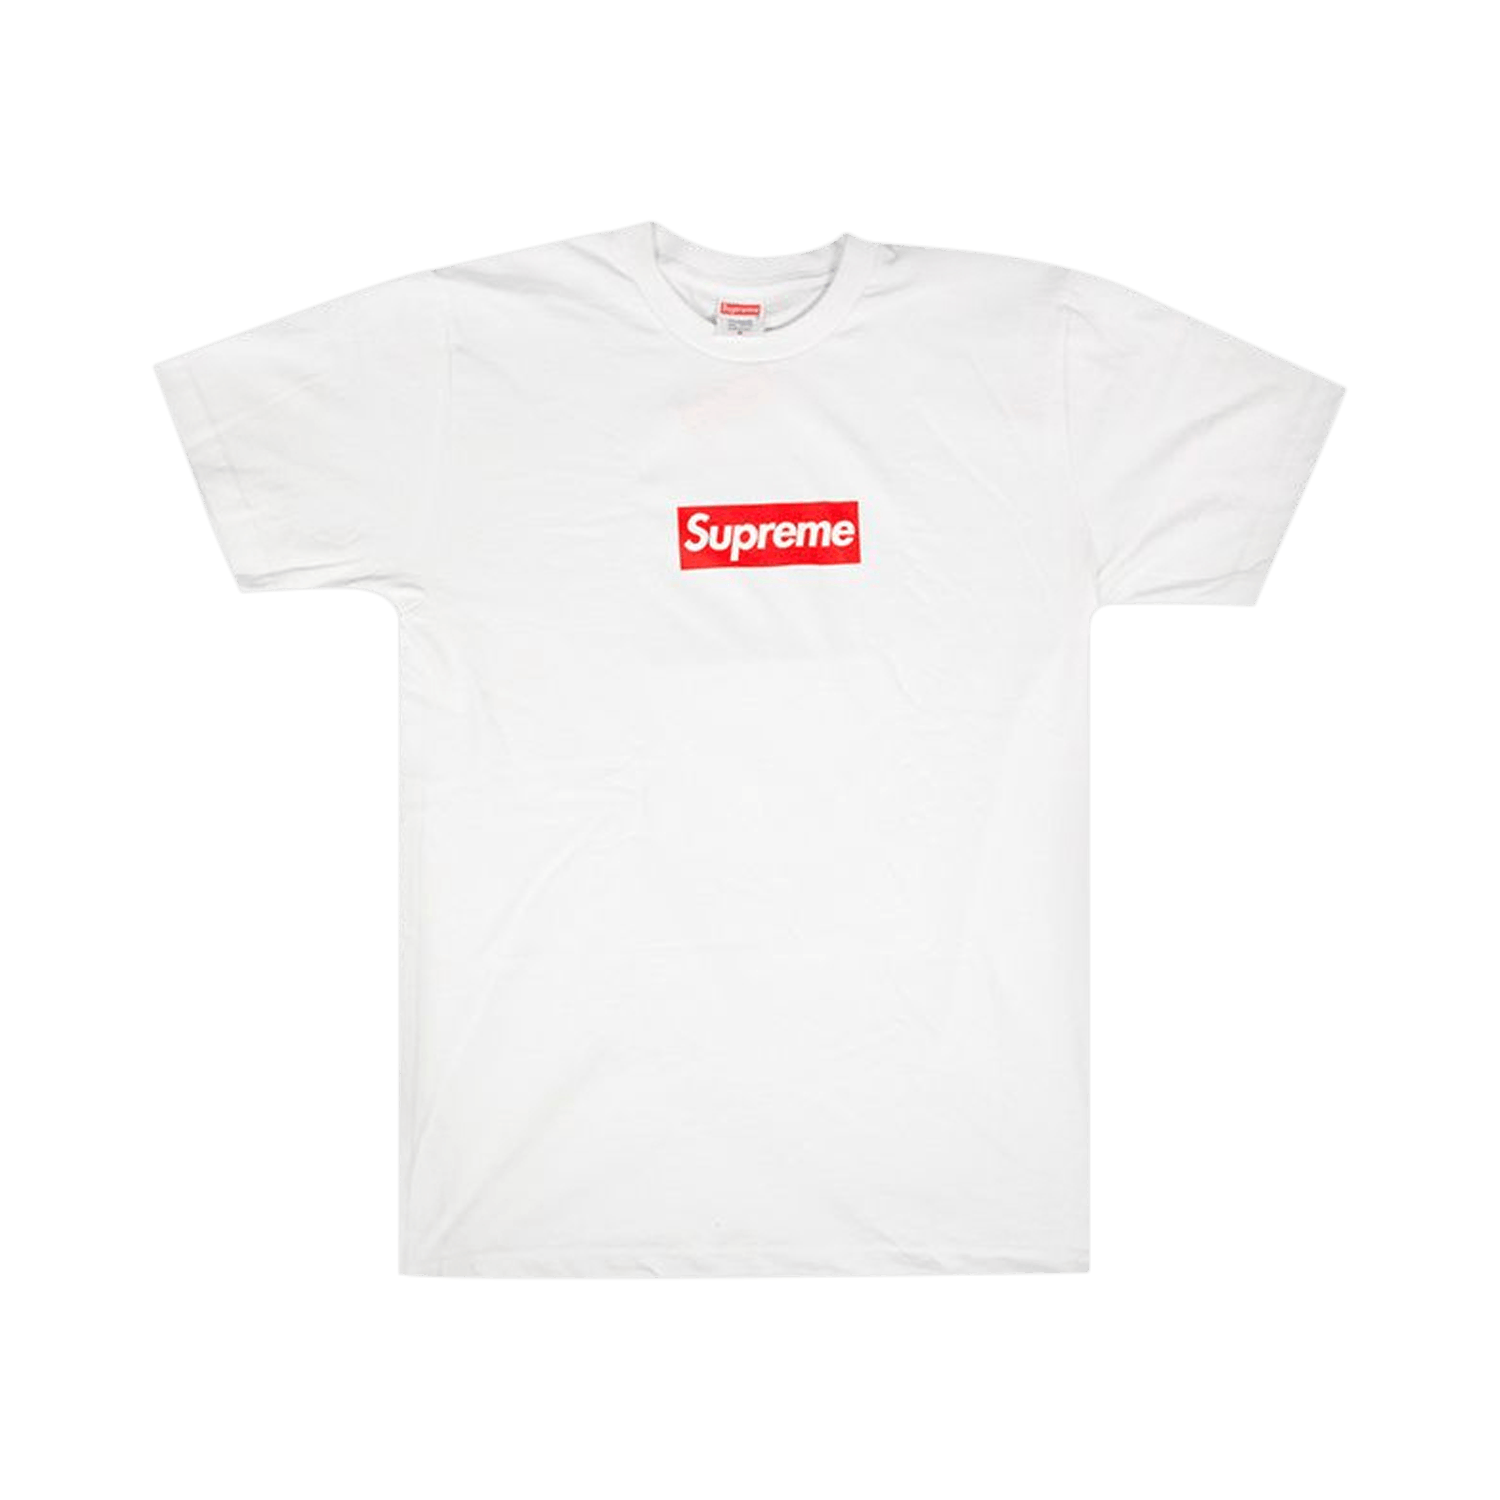 Supreme 20th Anniversary Box Logo T-Shirt 'White' - Supreme - SS14T10